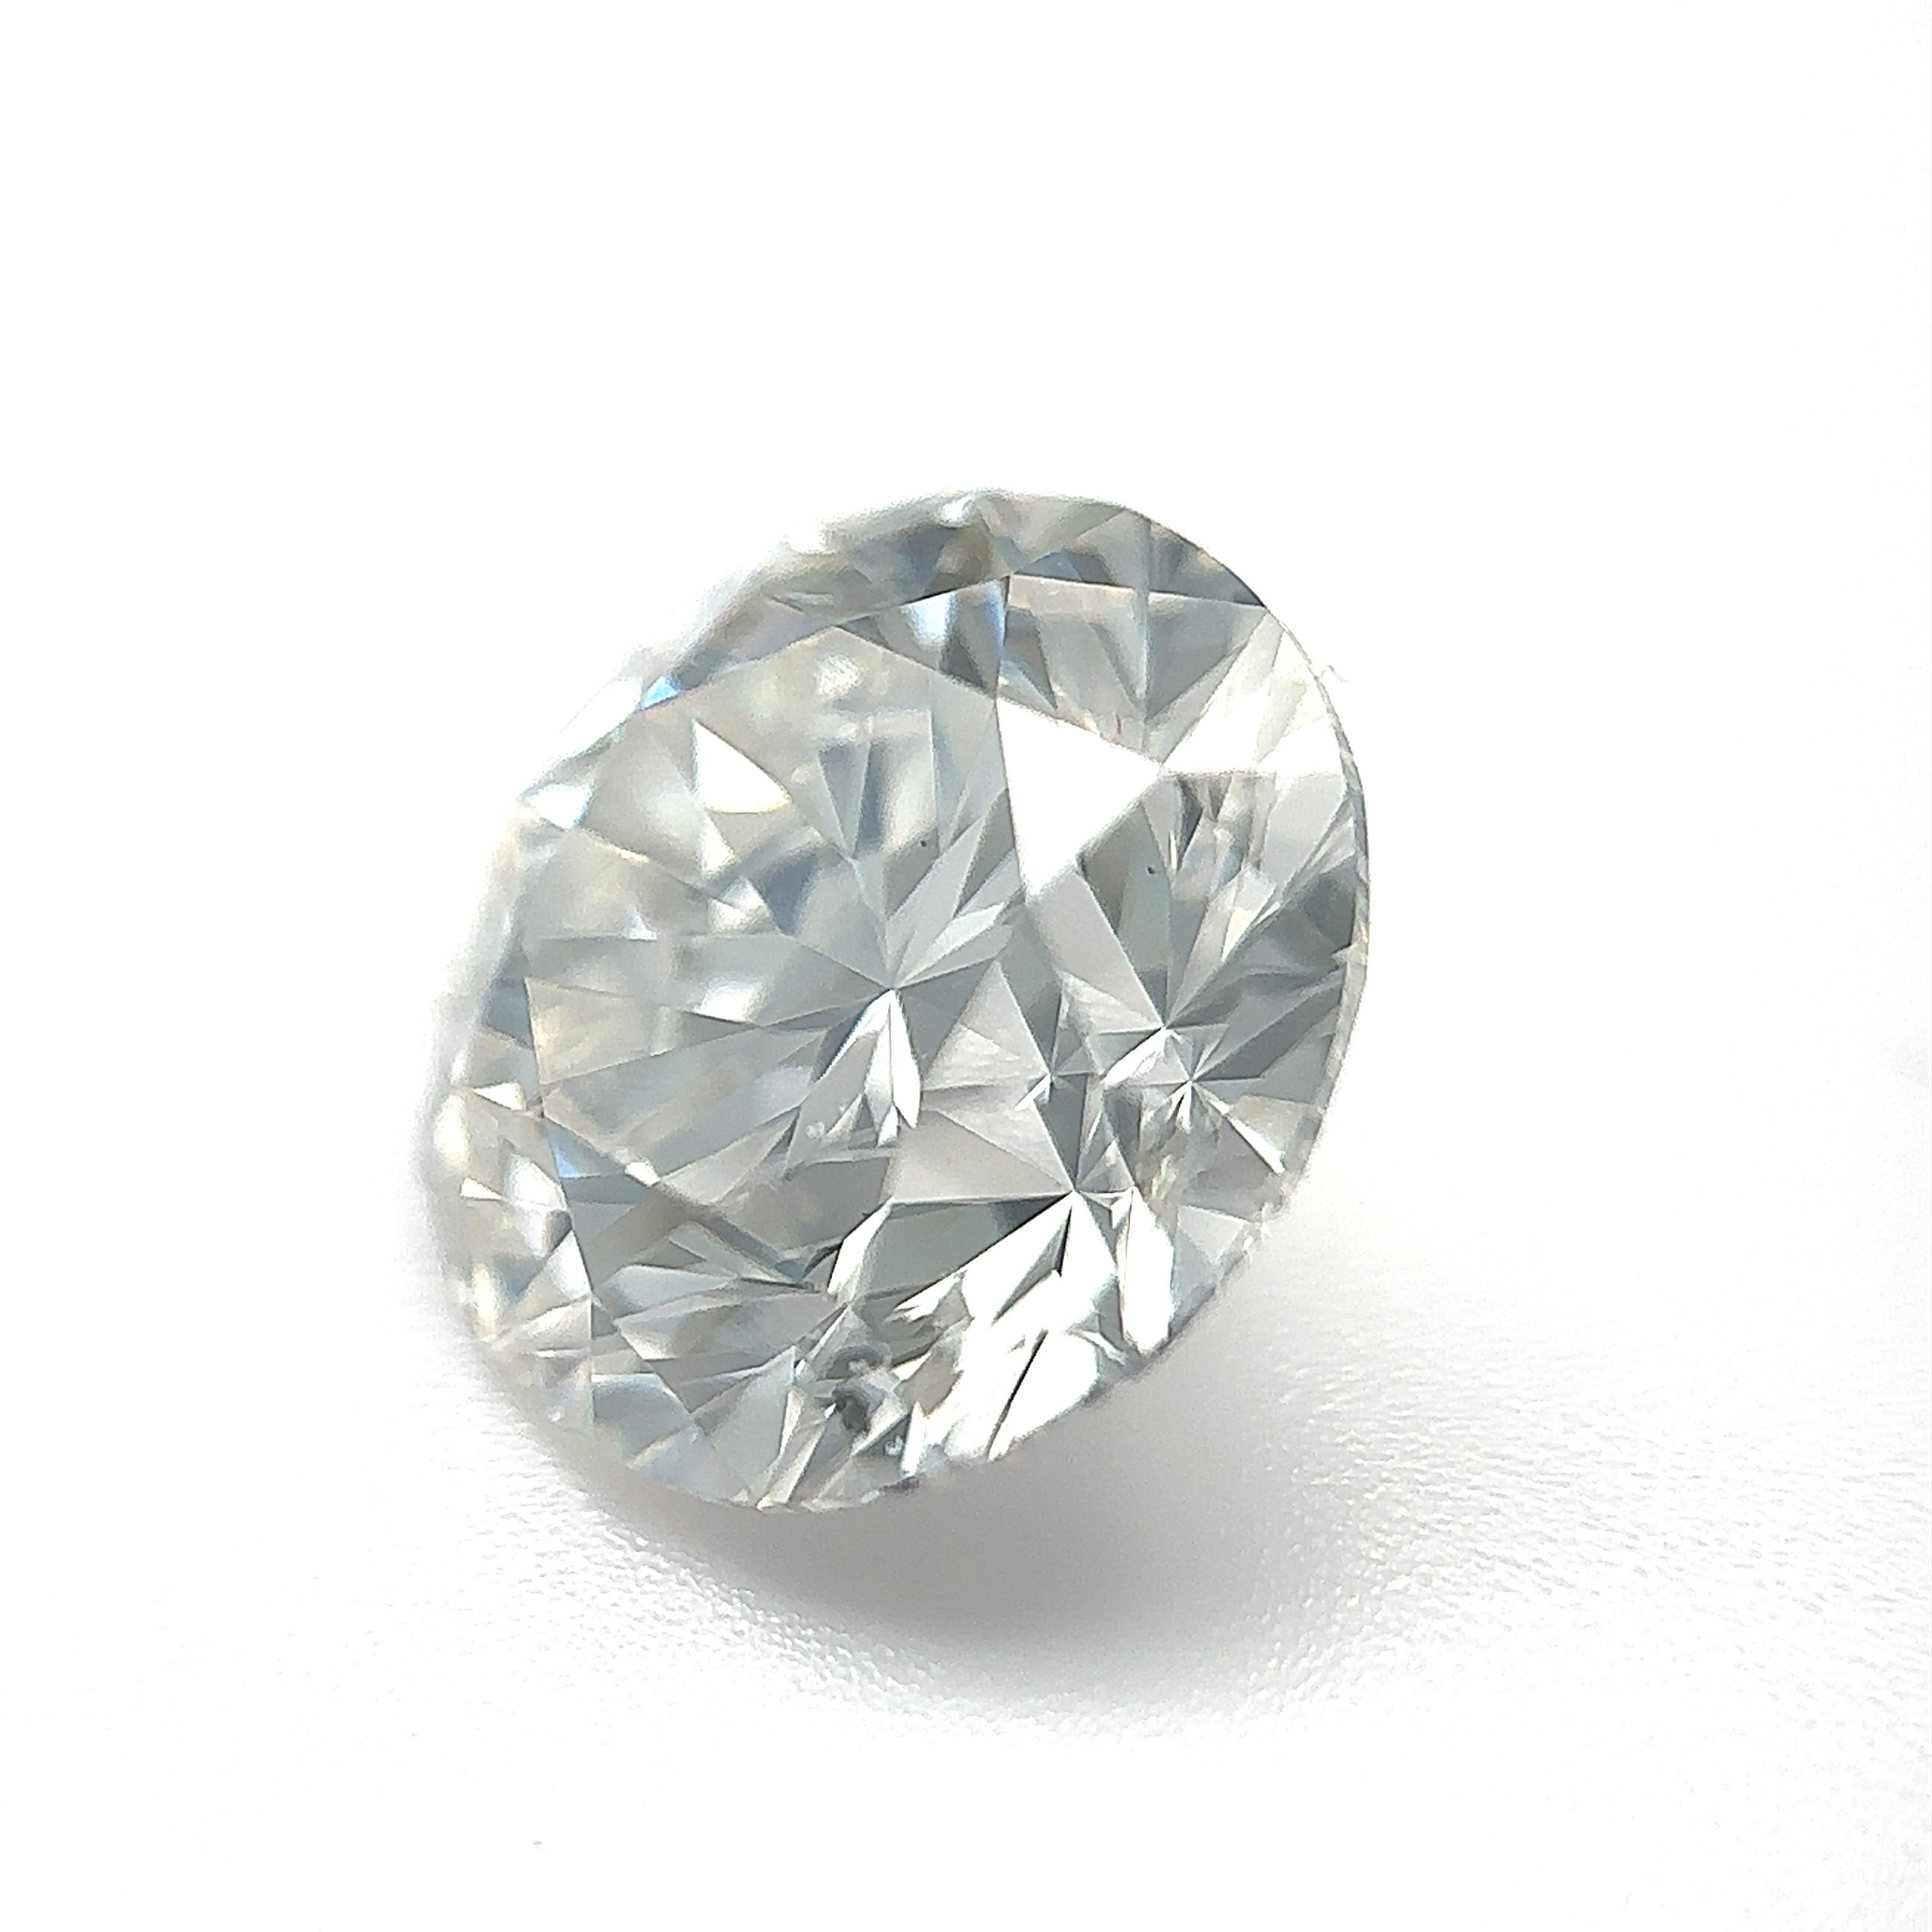 GIA Certified 3.24 Carat Round Brilliant Natural Diamond Loose Stone (Customization Option)

Couleur : H
Clarté : SI2 

Idéal pour les bagues de fiançailles, les alliances, les colliers et les boucles d'oreilles en diamant. Contactez-nous pour